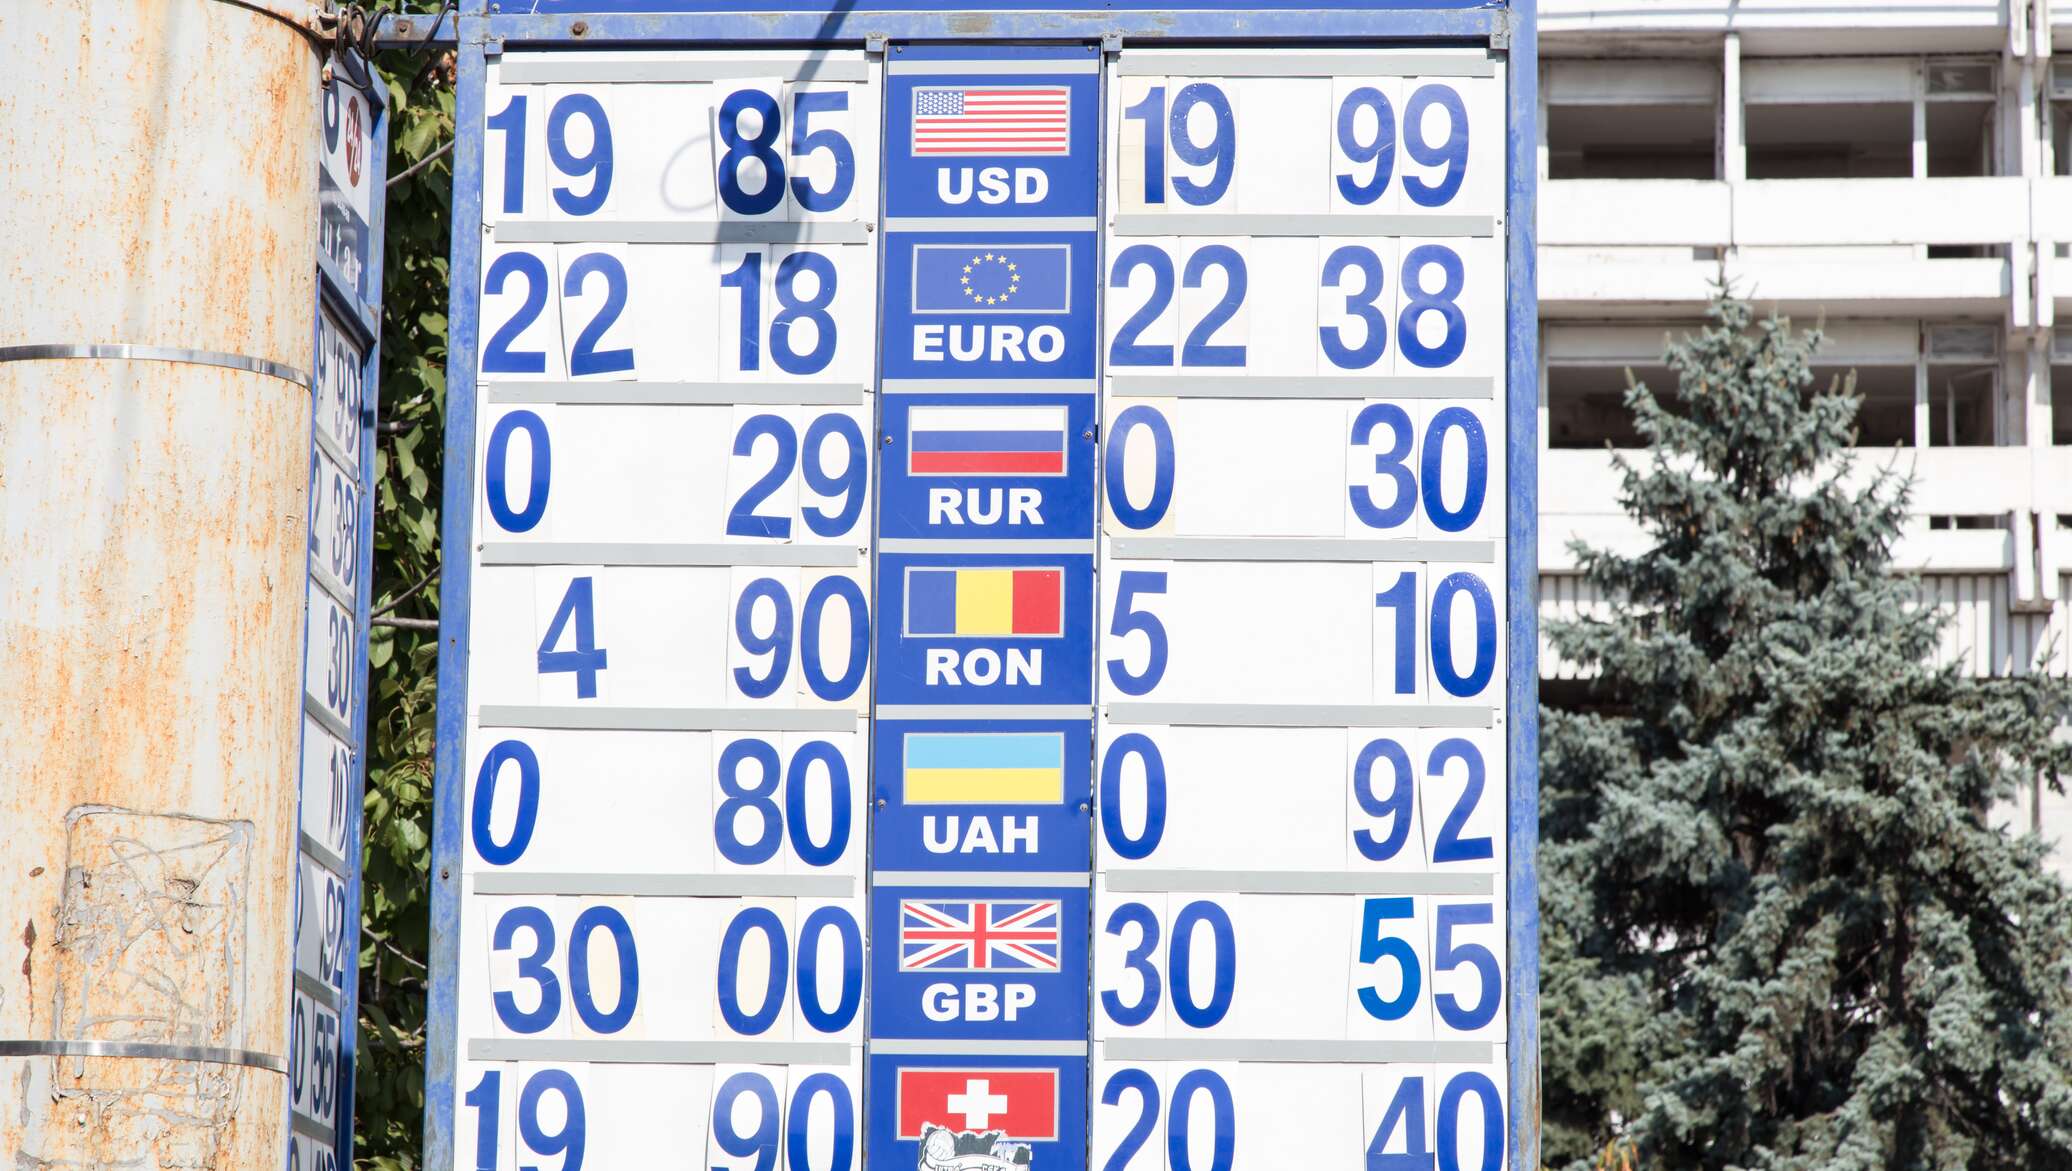 Курс валют на сегодня в молдове кишинев. Курсы валют. Курсы валют в Молдове. Кишинев валюта. Молдавия Кишинев евро.